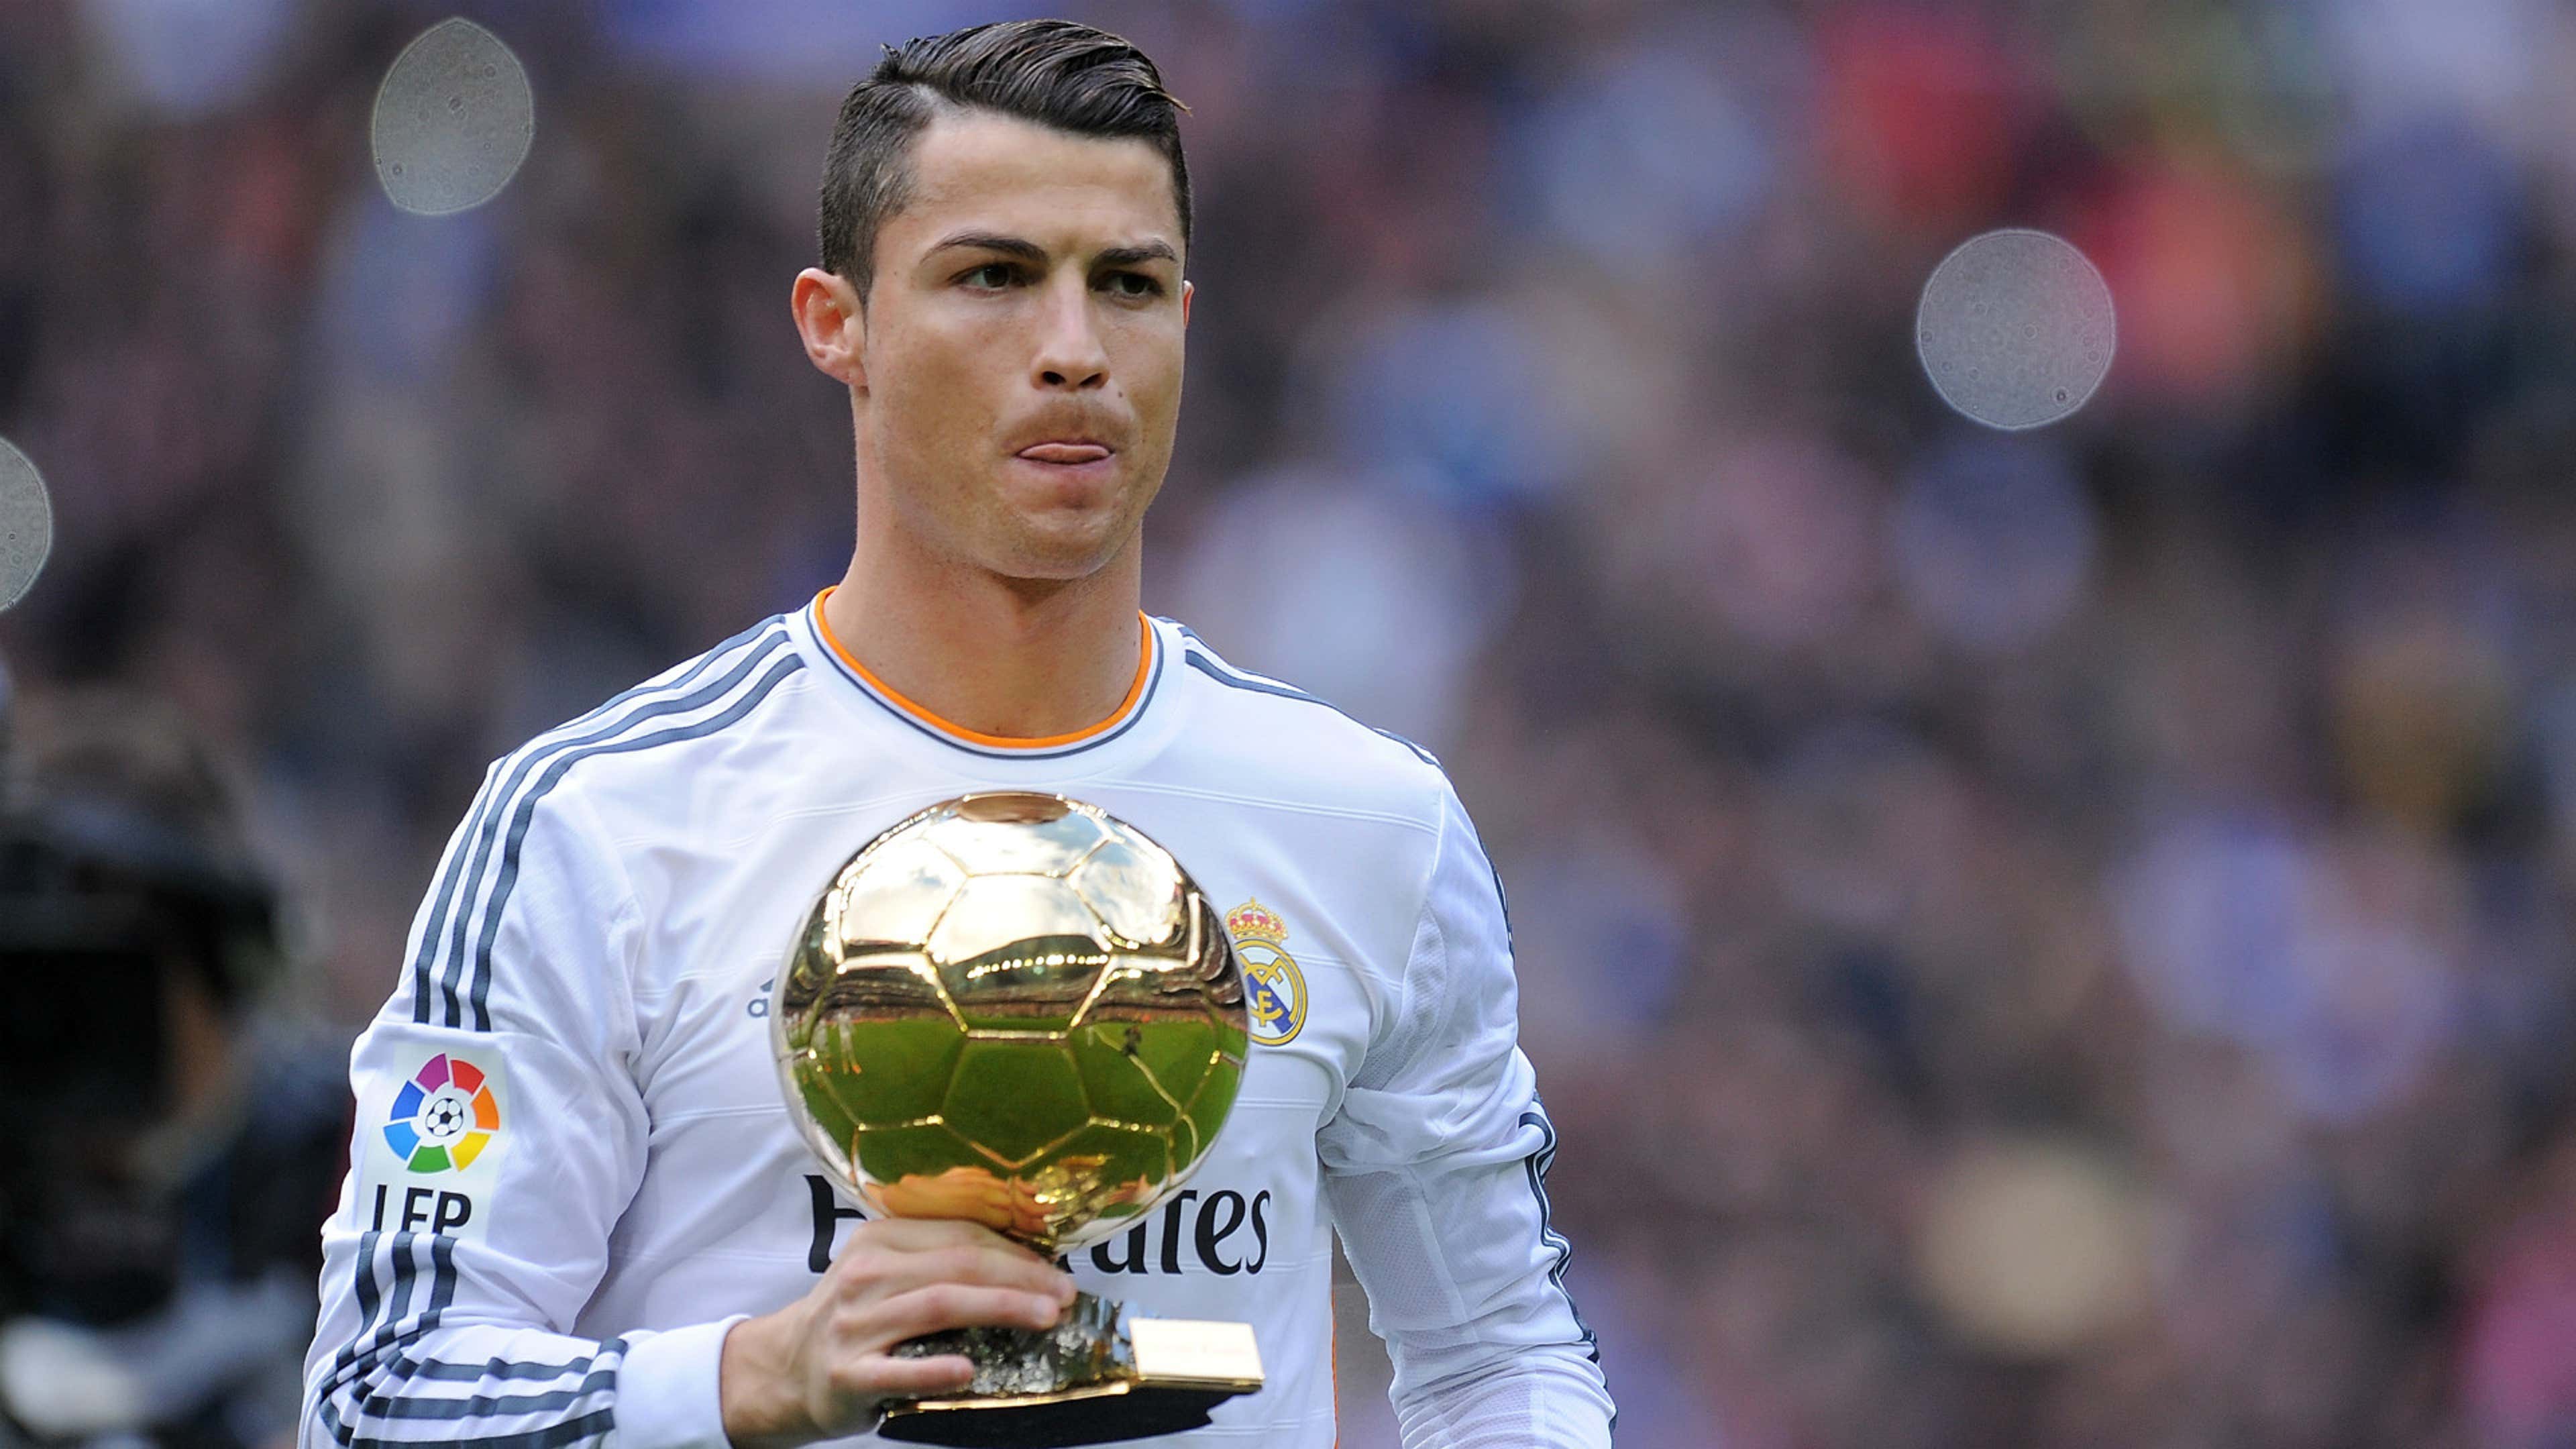 BandSports - Ronaldo, o jogador mais jovem a ser eleito melhor do mundo!  Jogava alguma coisa o Fenômeno? 💥💥💥 #Ronaldo #Fenomeno #Fenômeno # Barcelona #CBF